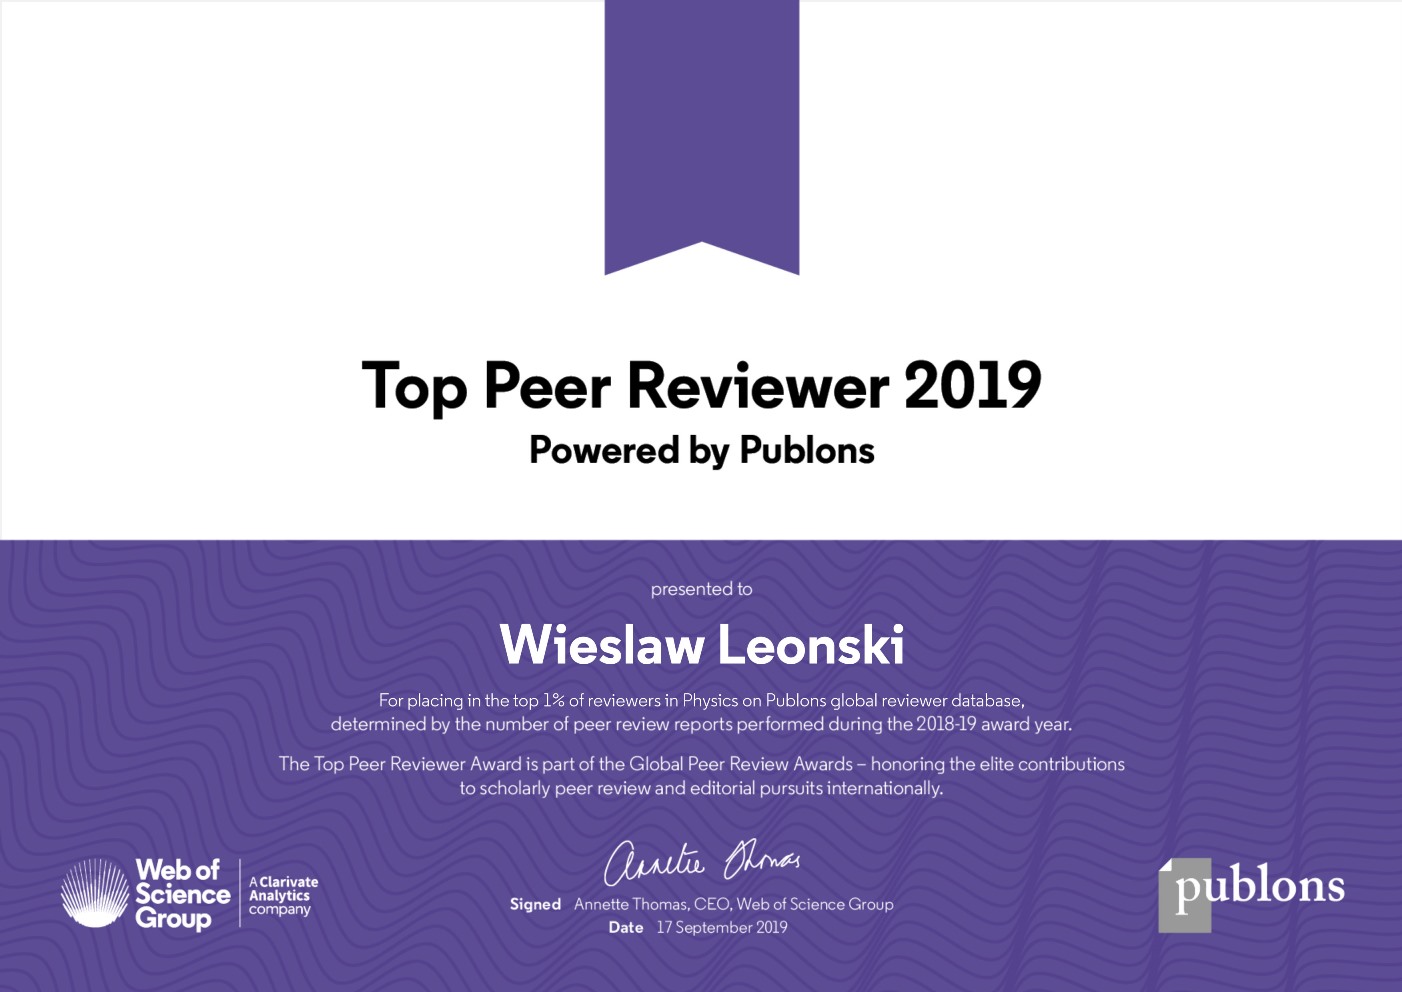 WieslawLeonski - Tom reviewers in Physics award 2019 wł.jpg